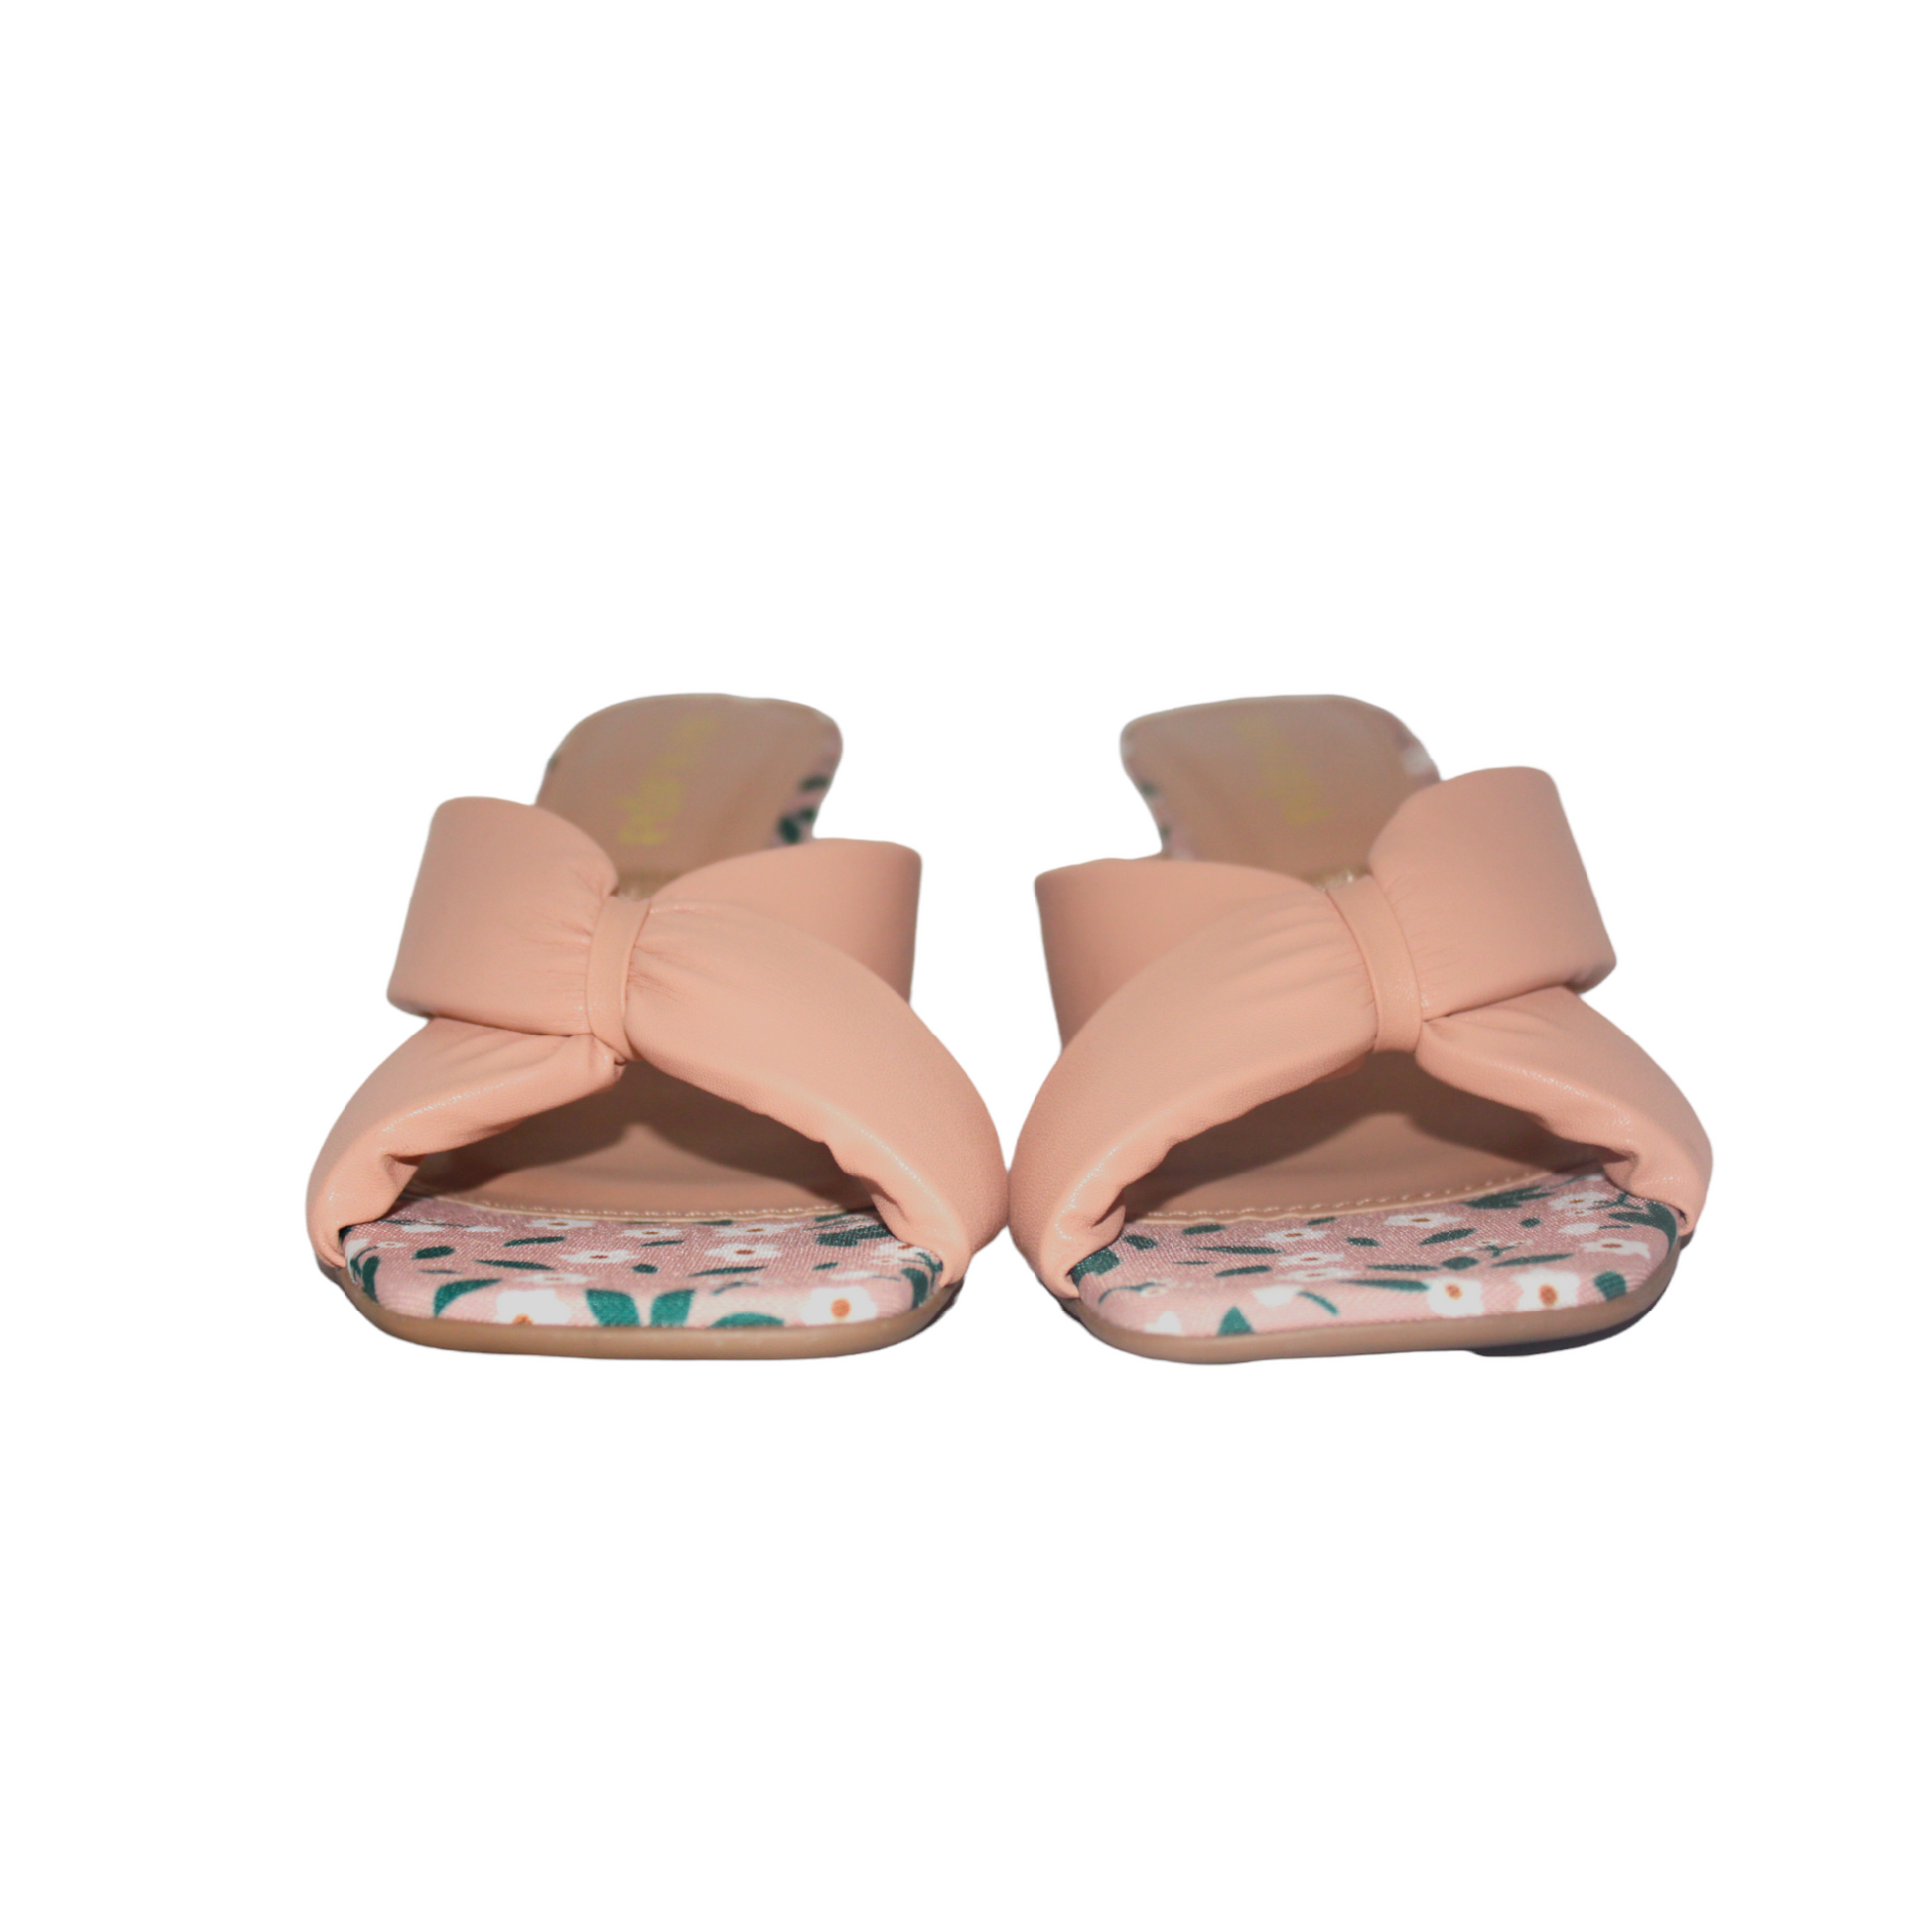 Blush Pink Slip On Heeled Mule Sandal - Julia & Santos 